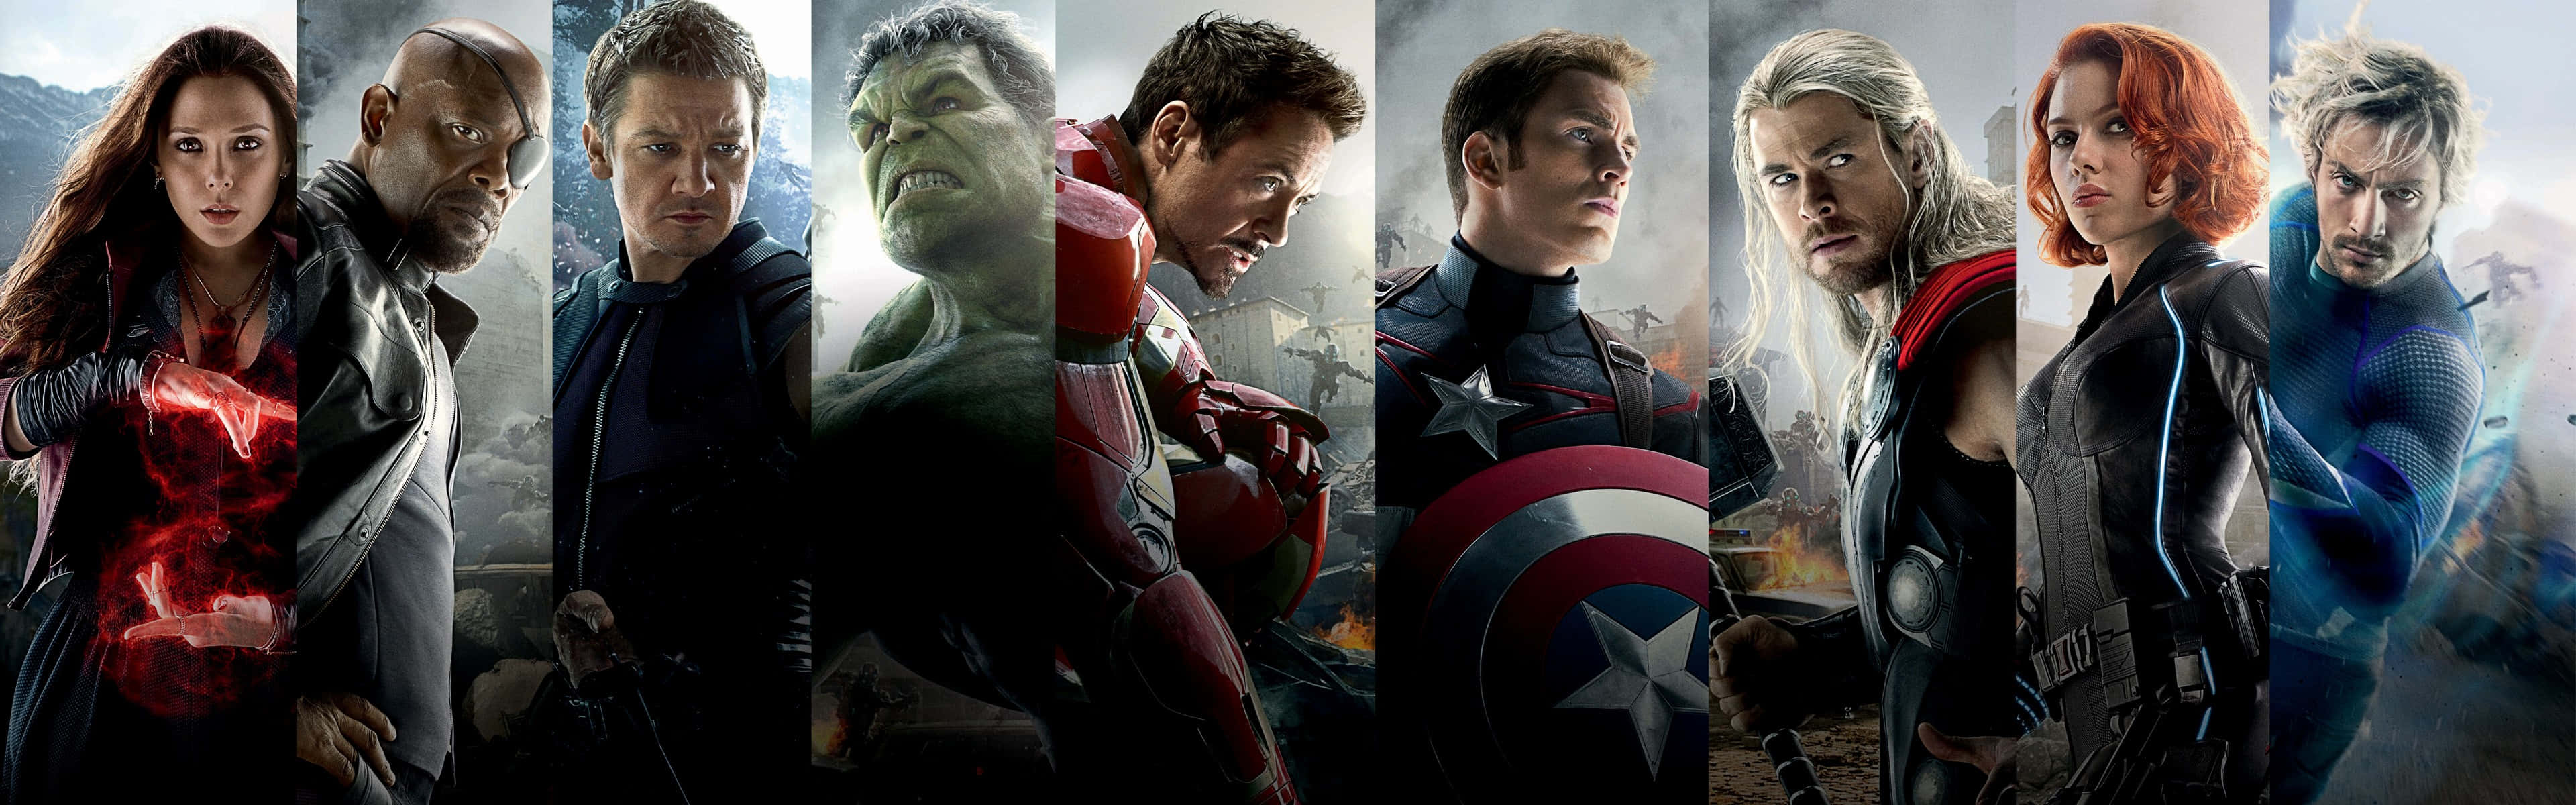 !Få Avengers Dual Screen for en Ultra HD-spilleoplevelse! Wallpaper